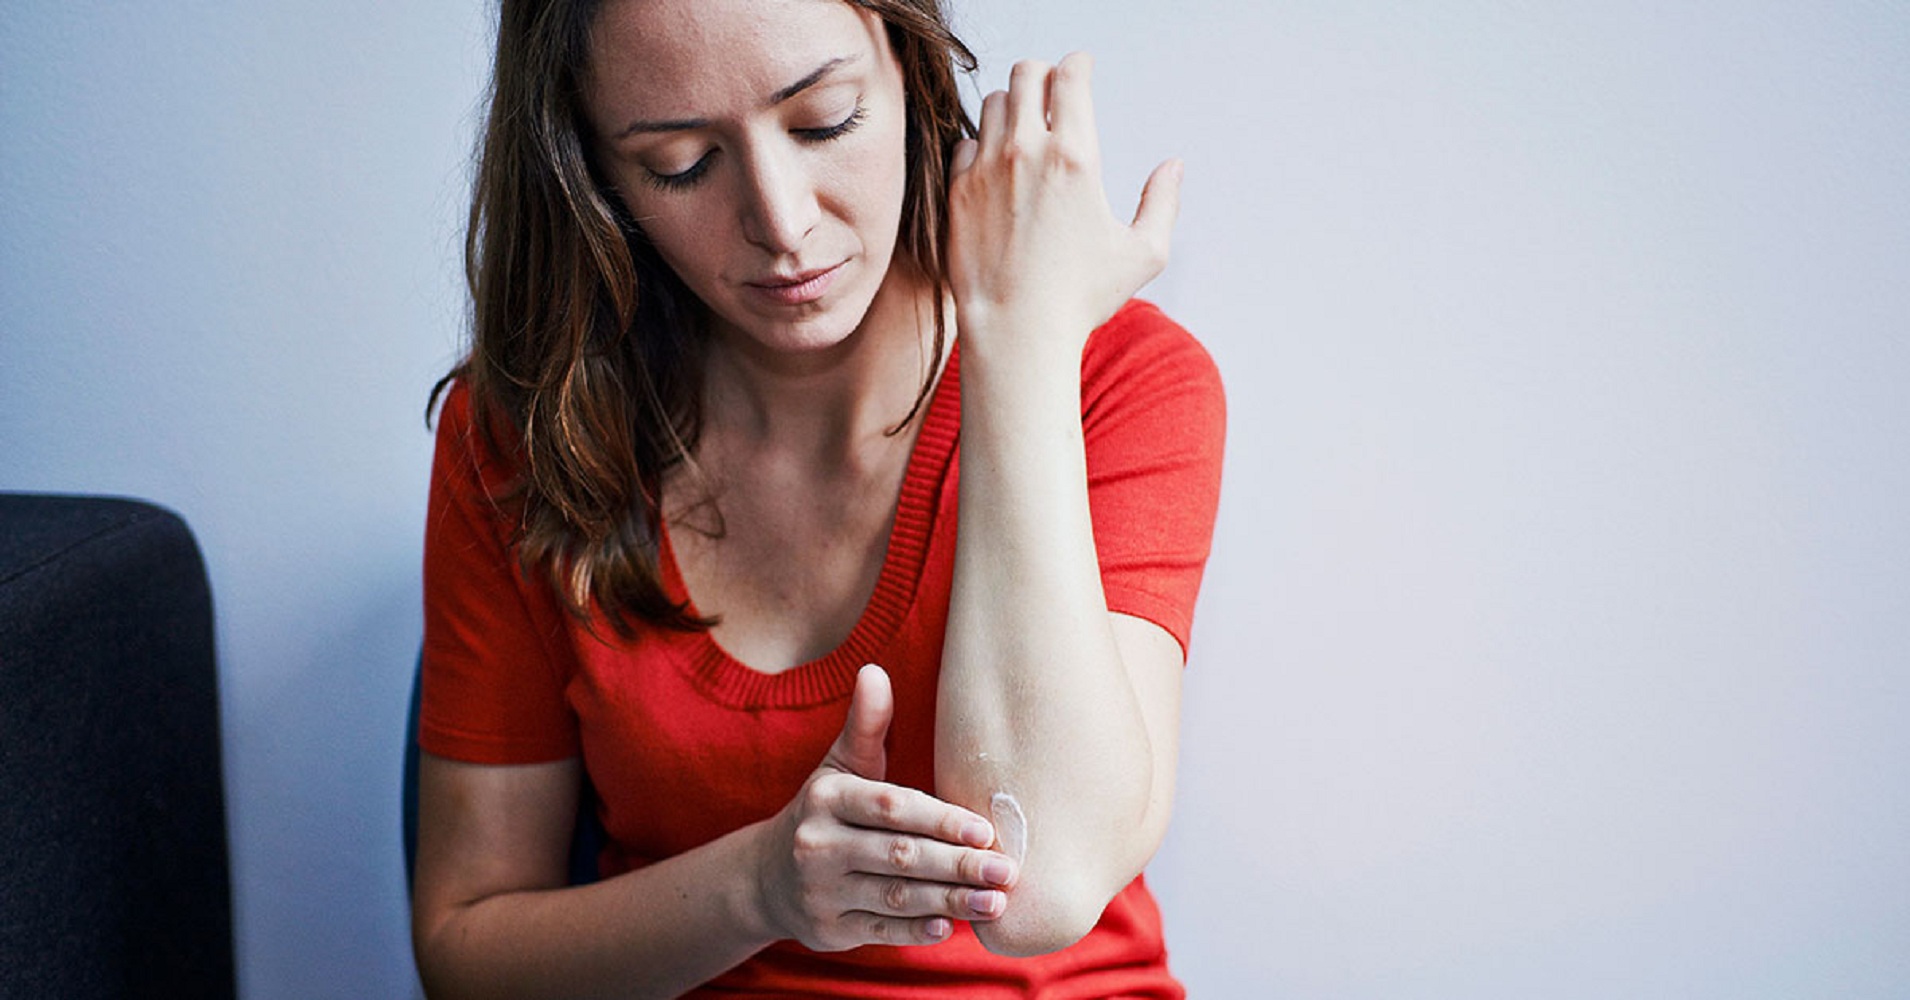 Szimpatika – A 10 leghatékonyabb házi gyógymód a kéz ízületi gyulladás kezelésére